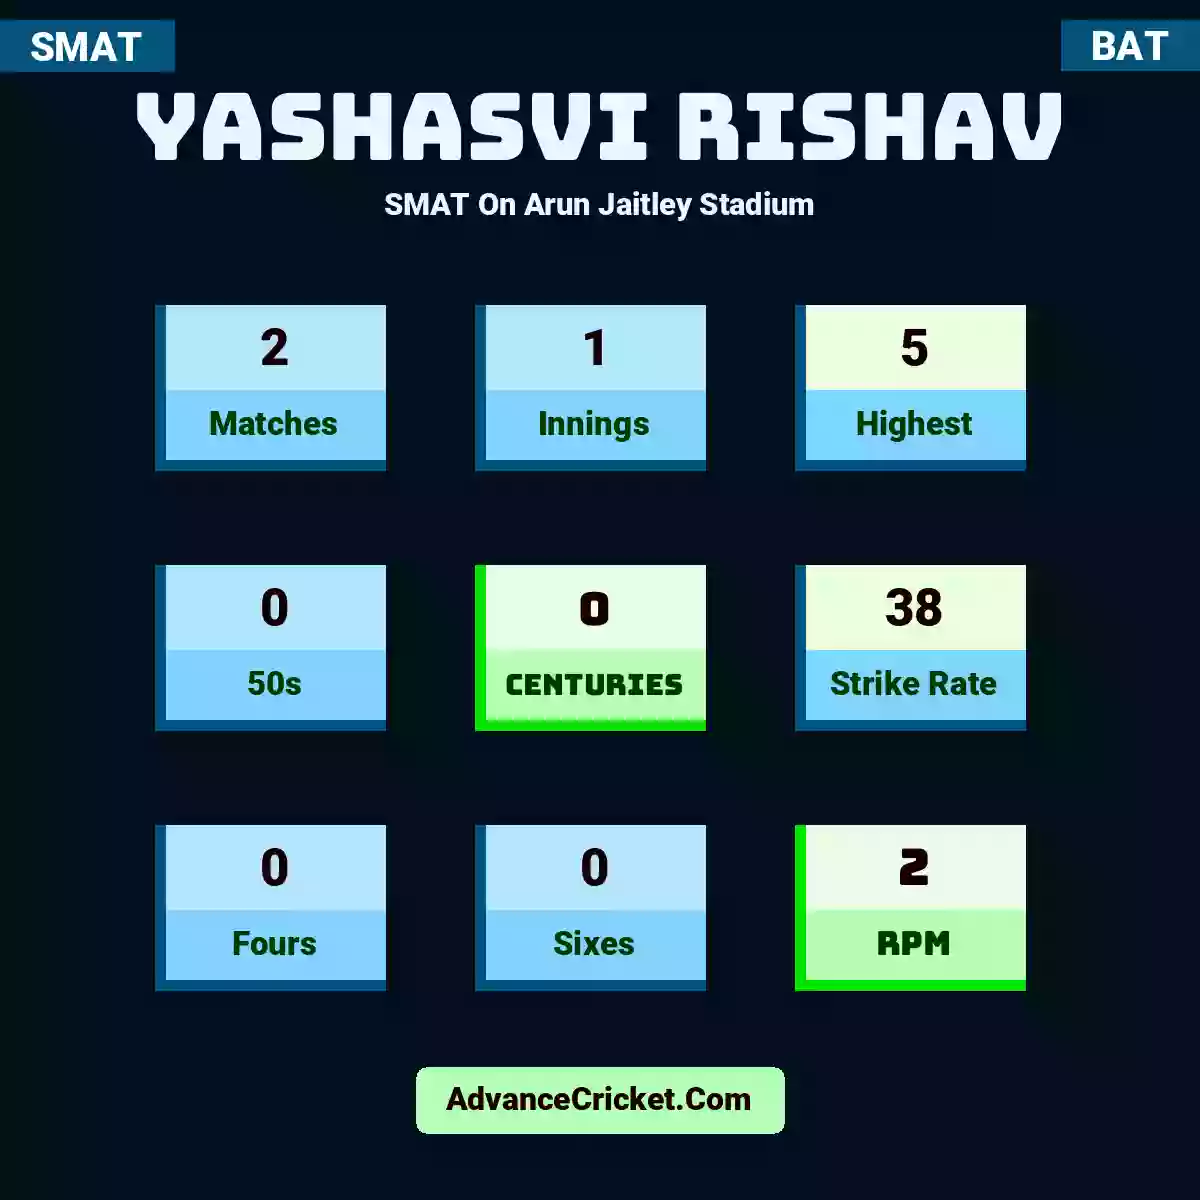 Yashasvi Rishav SMAT  On Arun Jaitley Stadium, Yashasvi Rishav played 2 matches, scored 5 runs as highest, 0 half-centuries, and 0 centuries, with a strike rate of 38. Yashasvi.Rishav hit 0 fours and 0 sixes, with an RPM of 2.